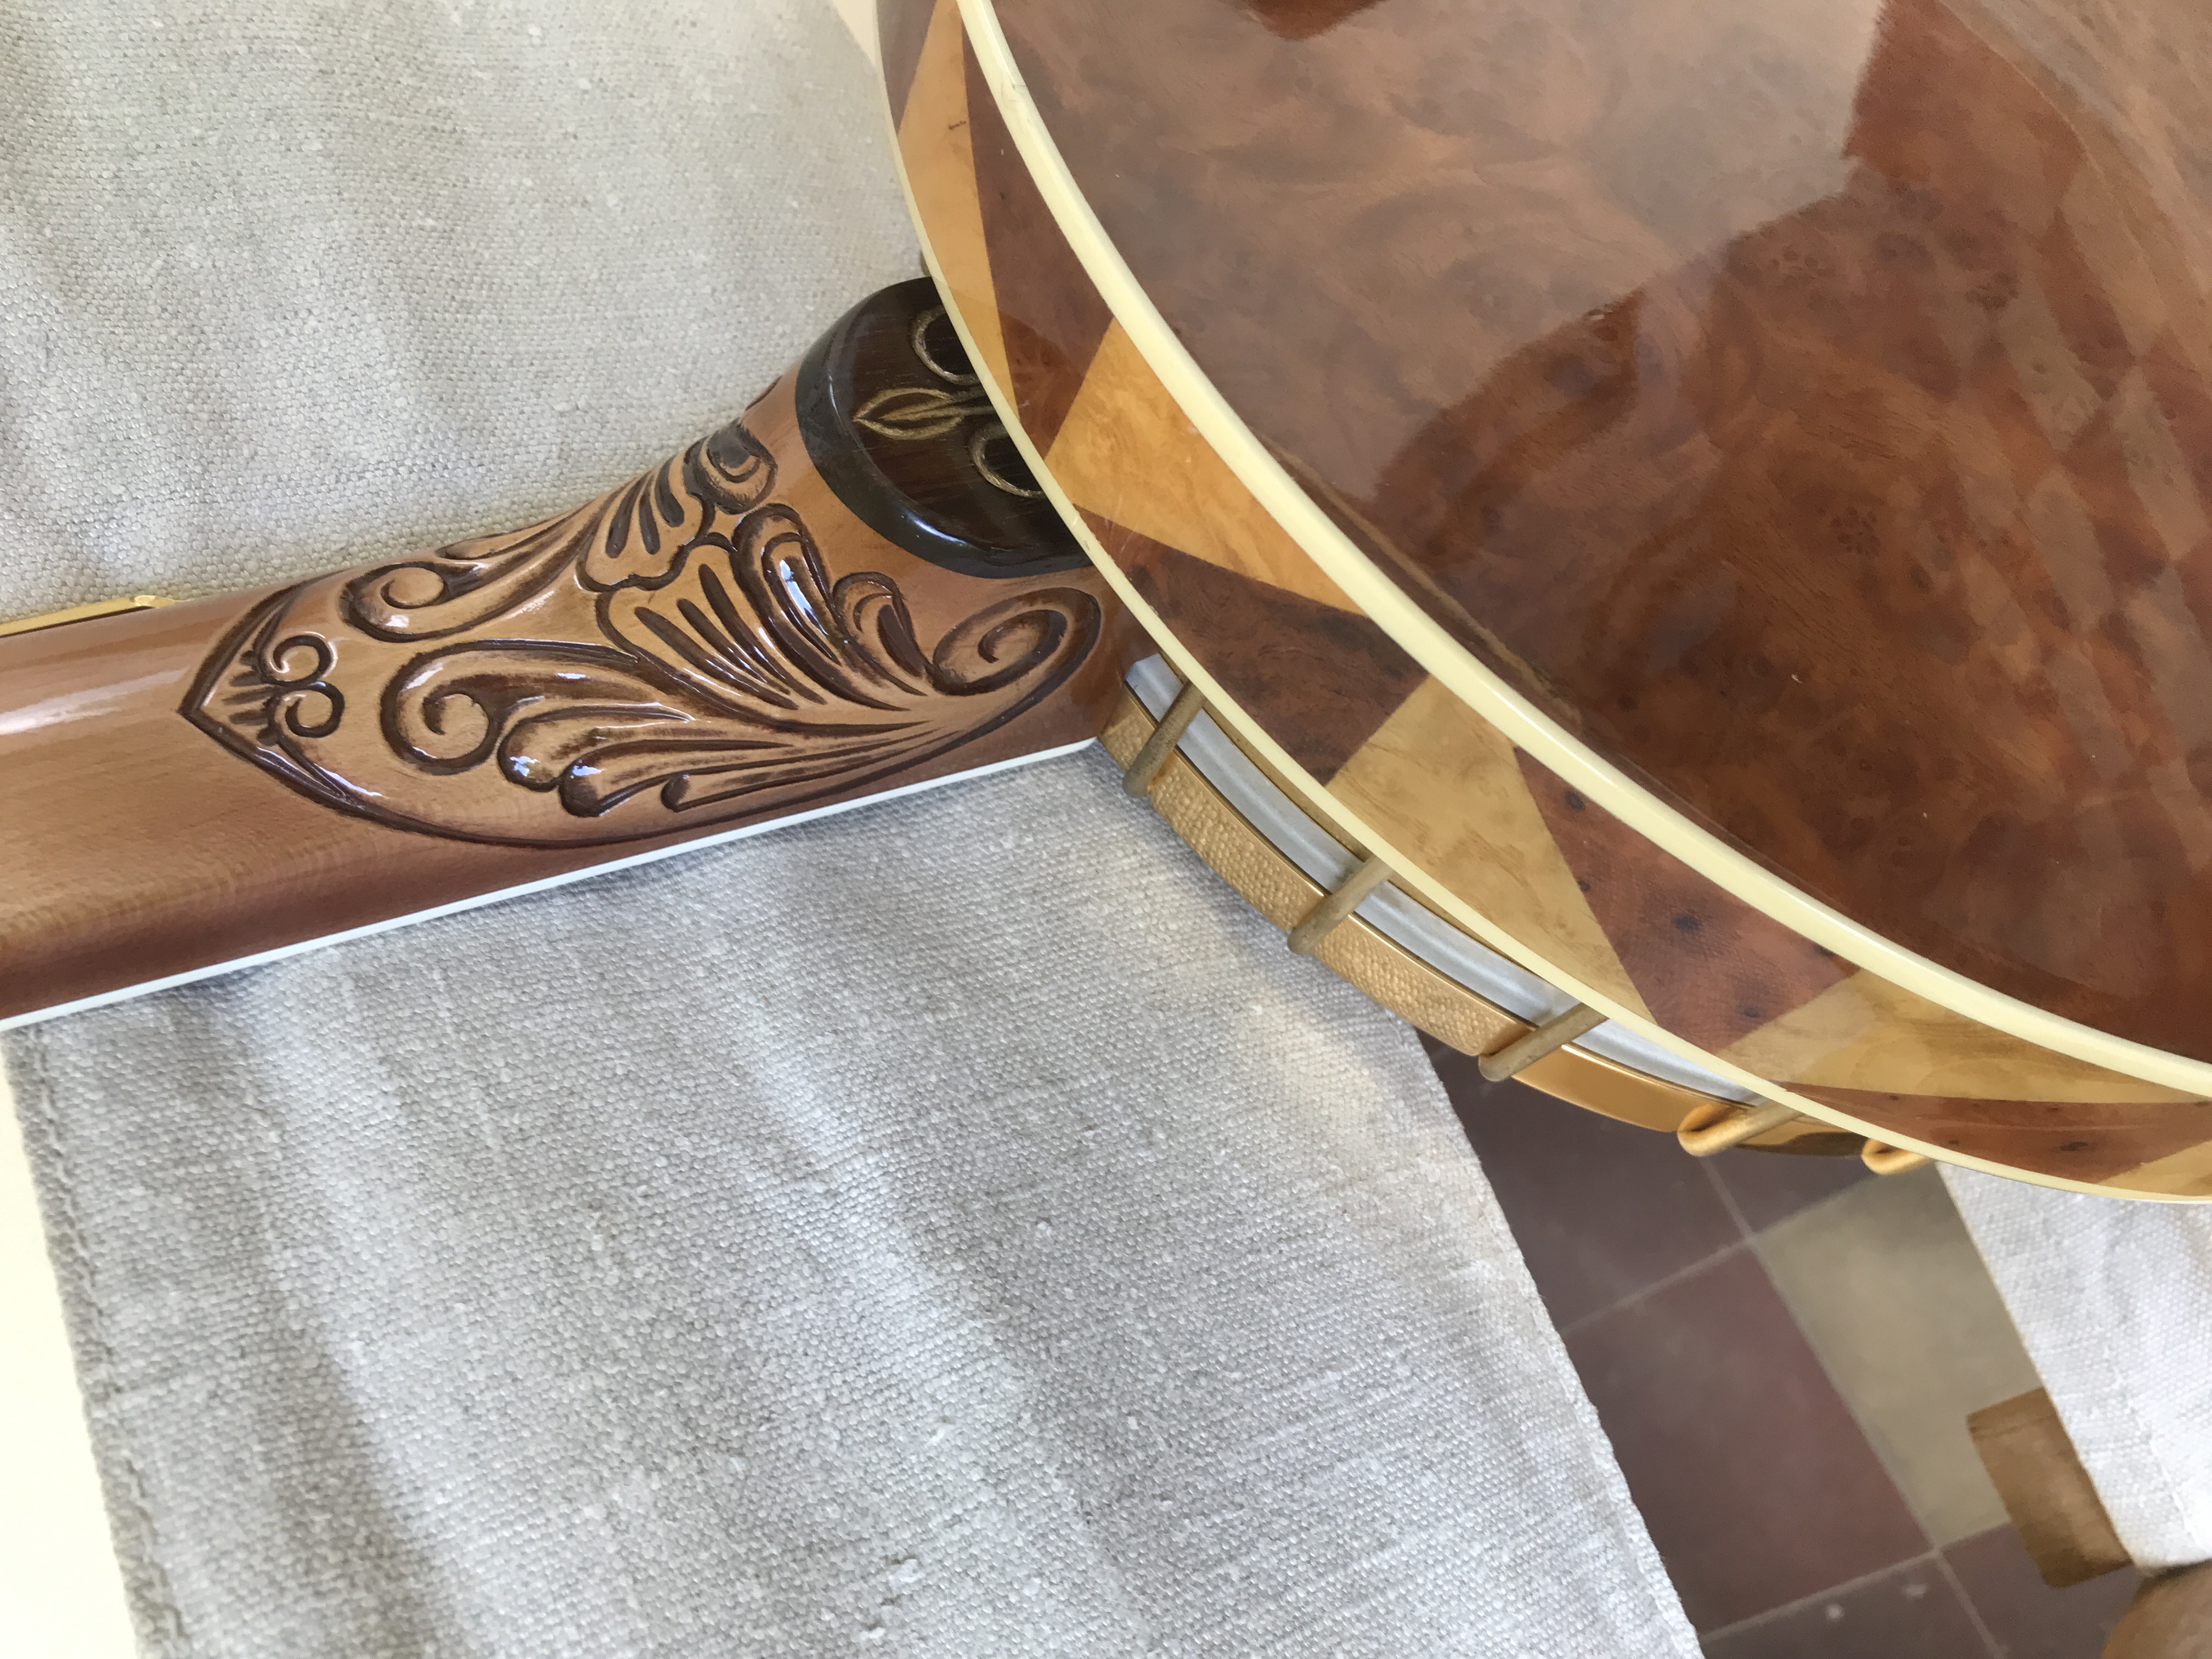 Framus Nashville Custom Made Banjo